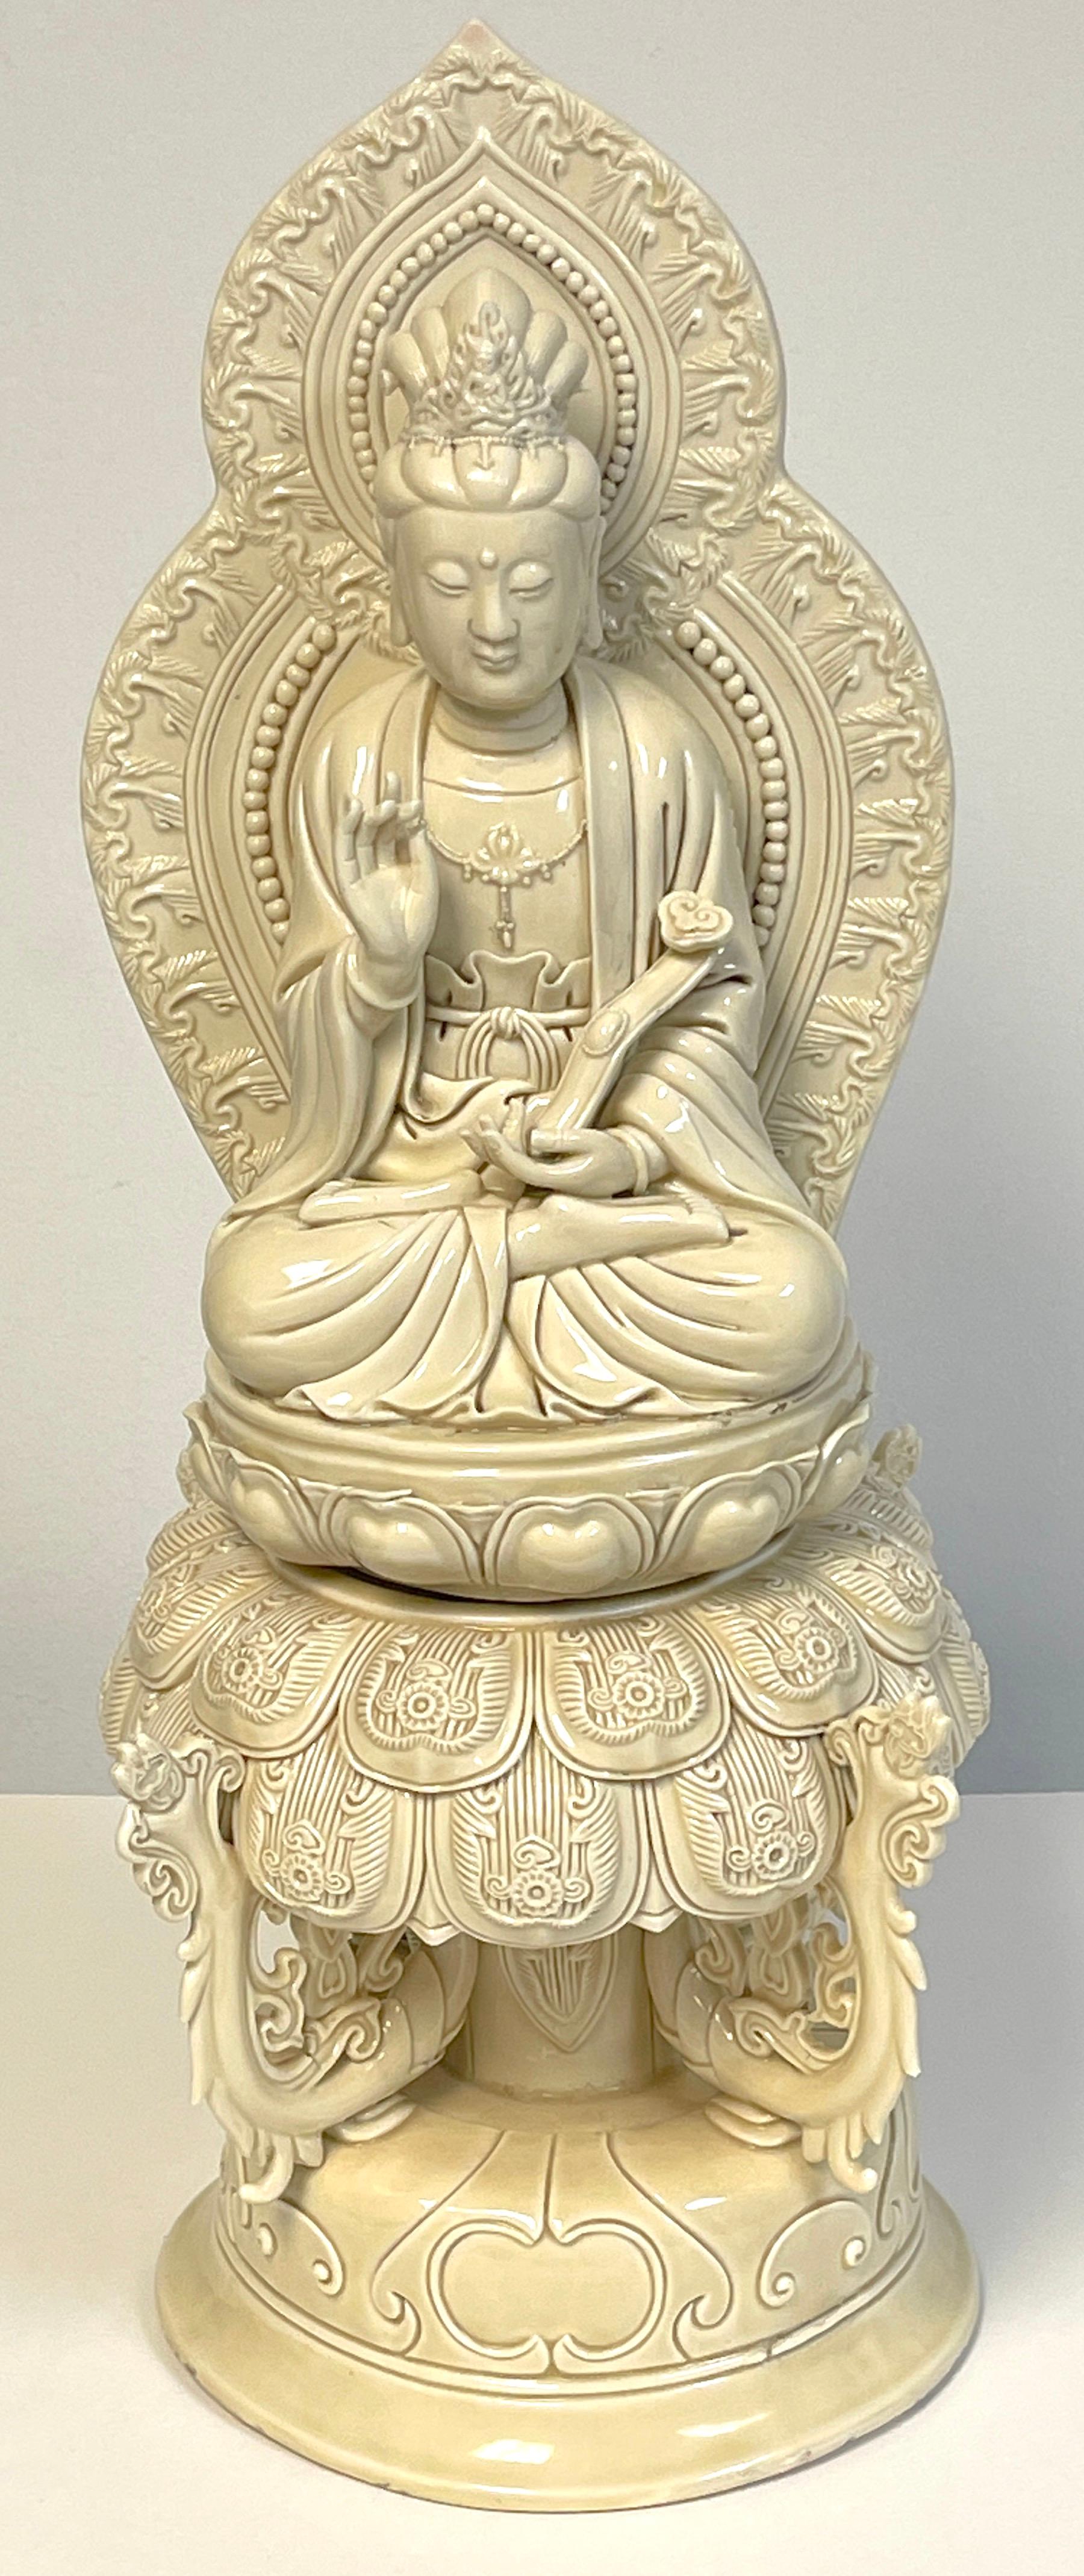 Pièce d'autel chinois Guanyin assis en Blanc-de-Chine, 19e/20e siècle

Une œuvre grande et impressionnante, en deux parties portant un sceau/marque de règne au dos du mandala.

La bodhisattva sereine devant un mandala en forme de pagode, portant